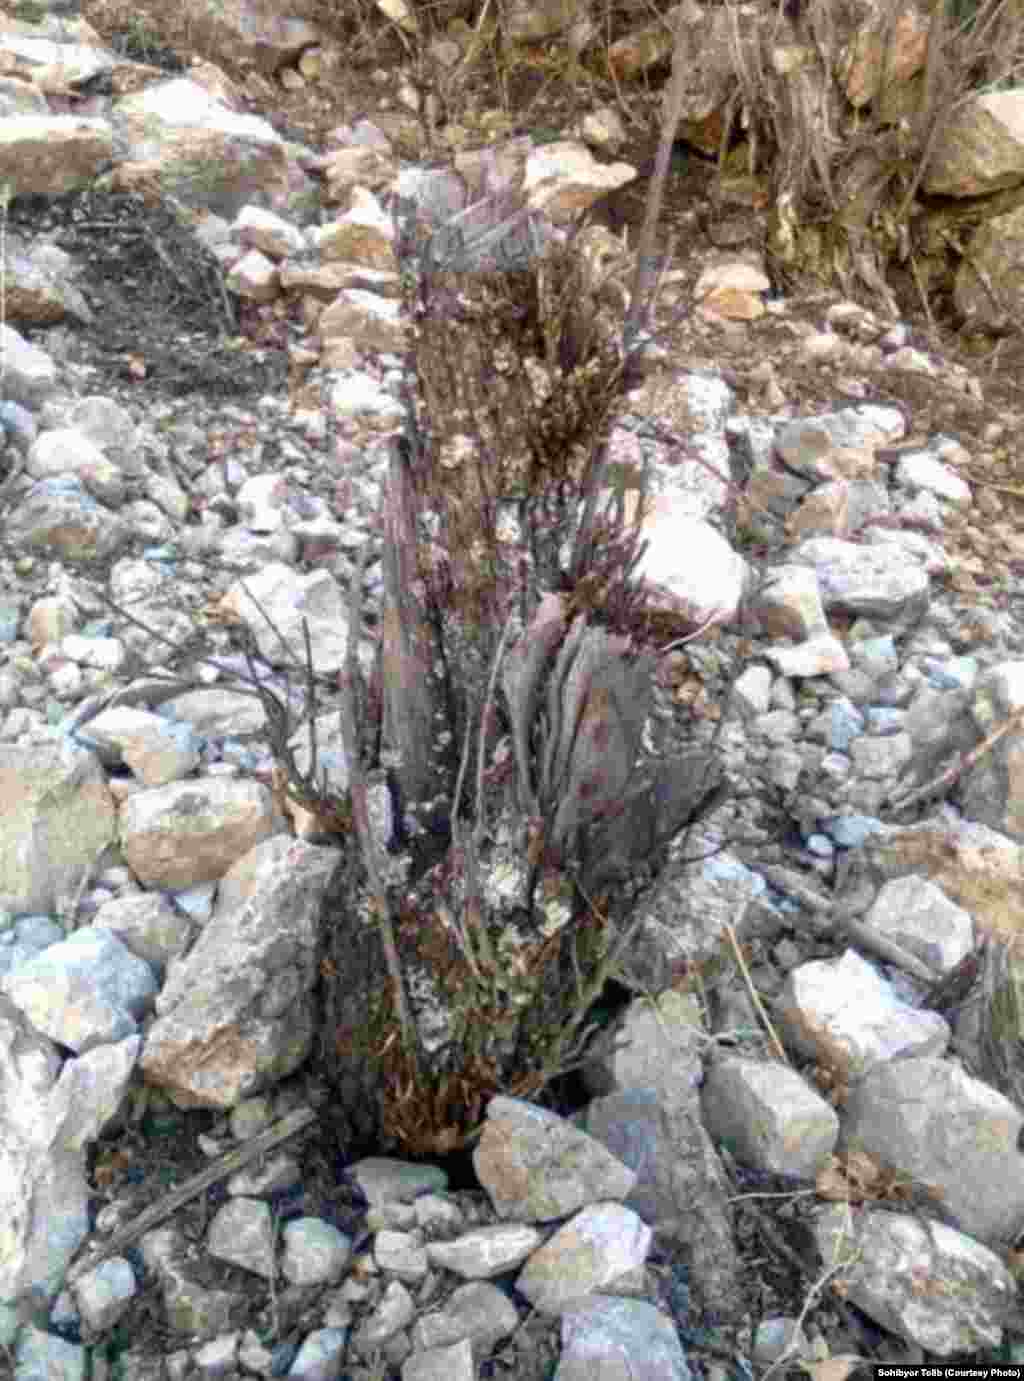 Из-за нехватки хвороста и дров, как пишет С.Толиб, местные жители прибегают к вырубке плодоносных деревьев